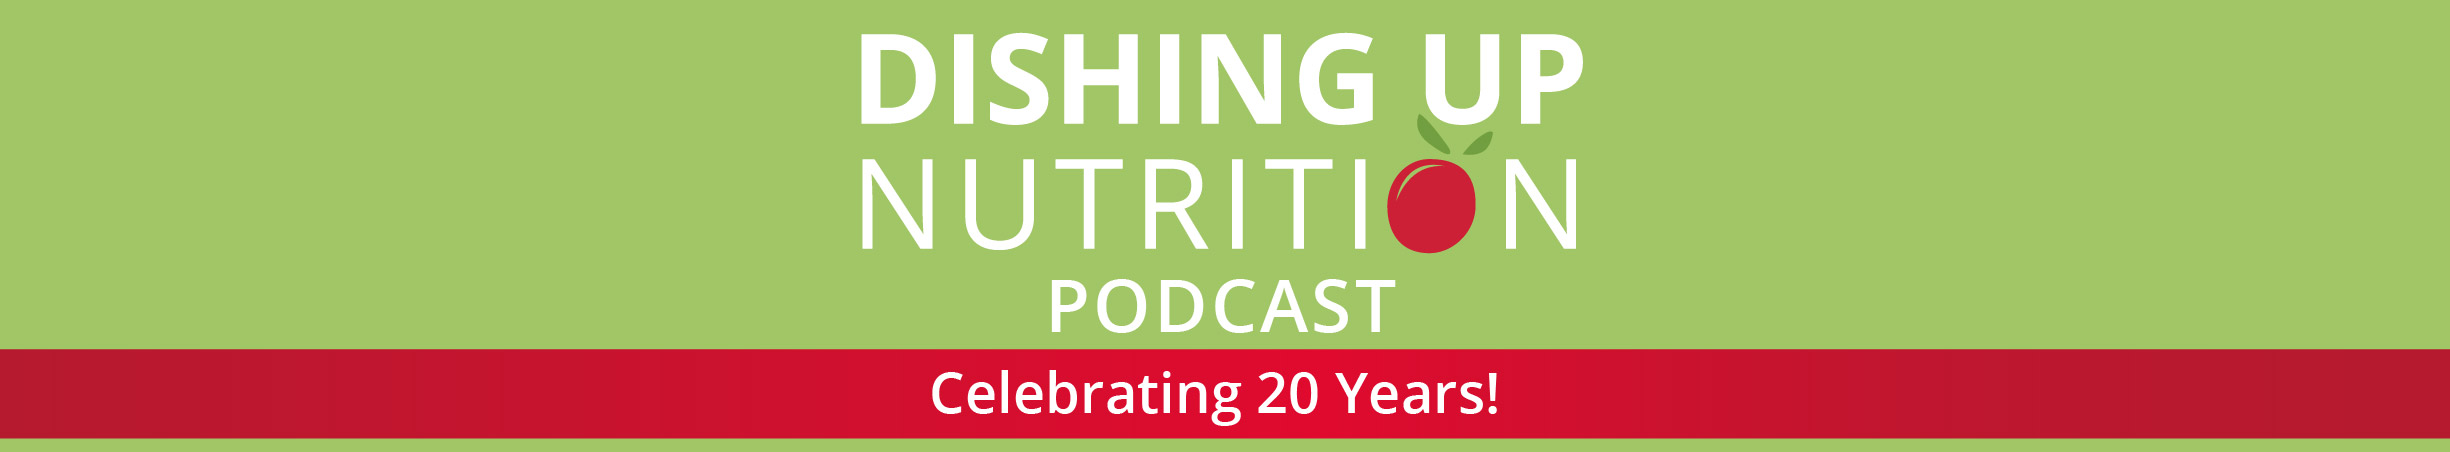 Dishing Up Nutrition celebrating 20 years